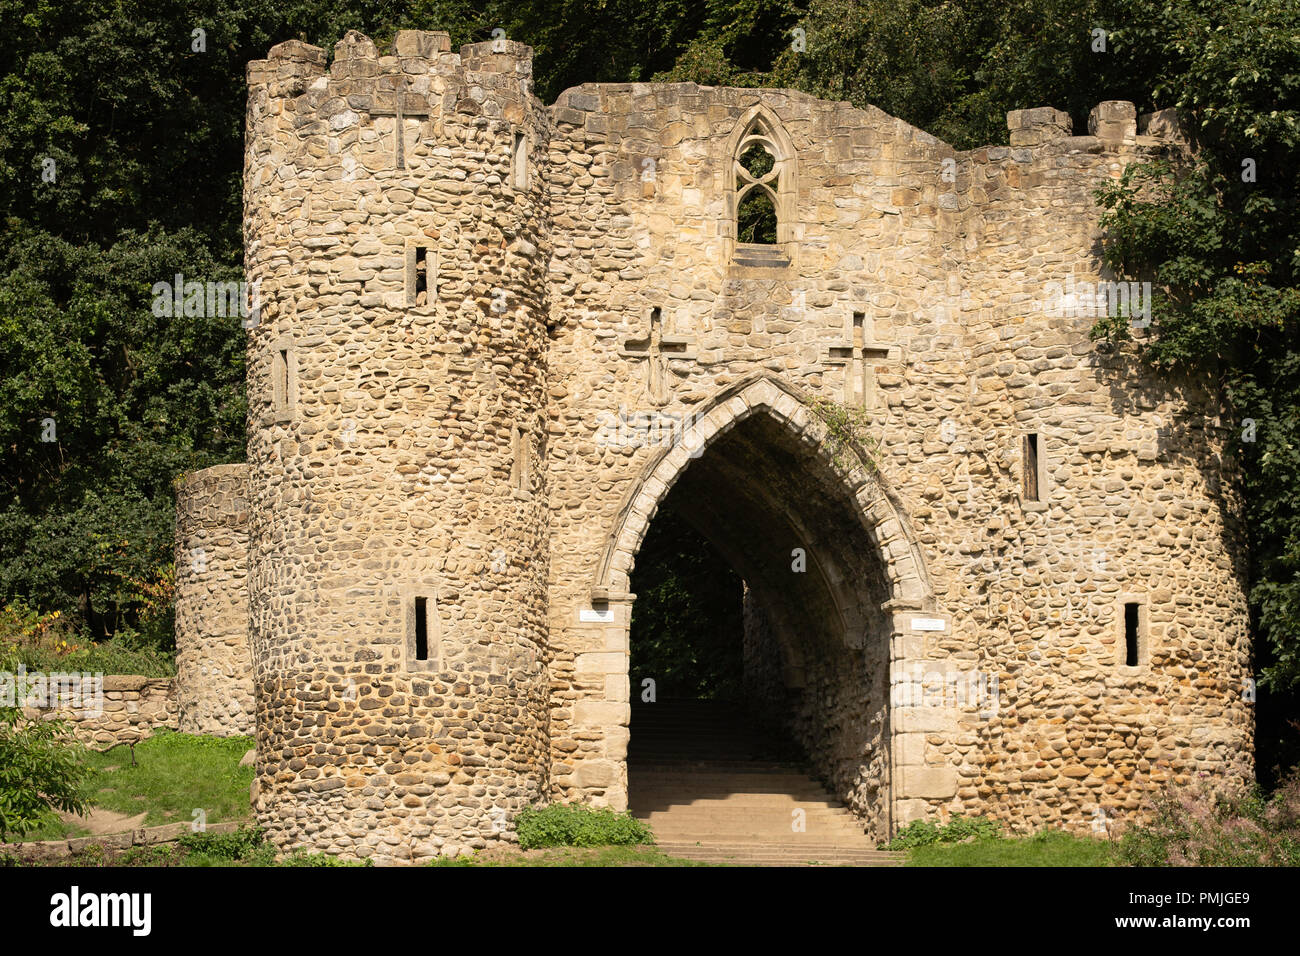 Castle Folly, Roundhay Park, Leeds, West Yorkshire, England, UK. Stock Photo